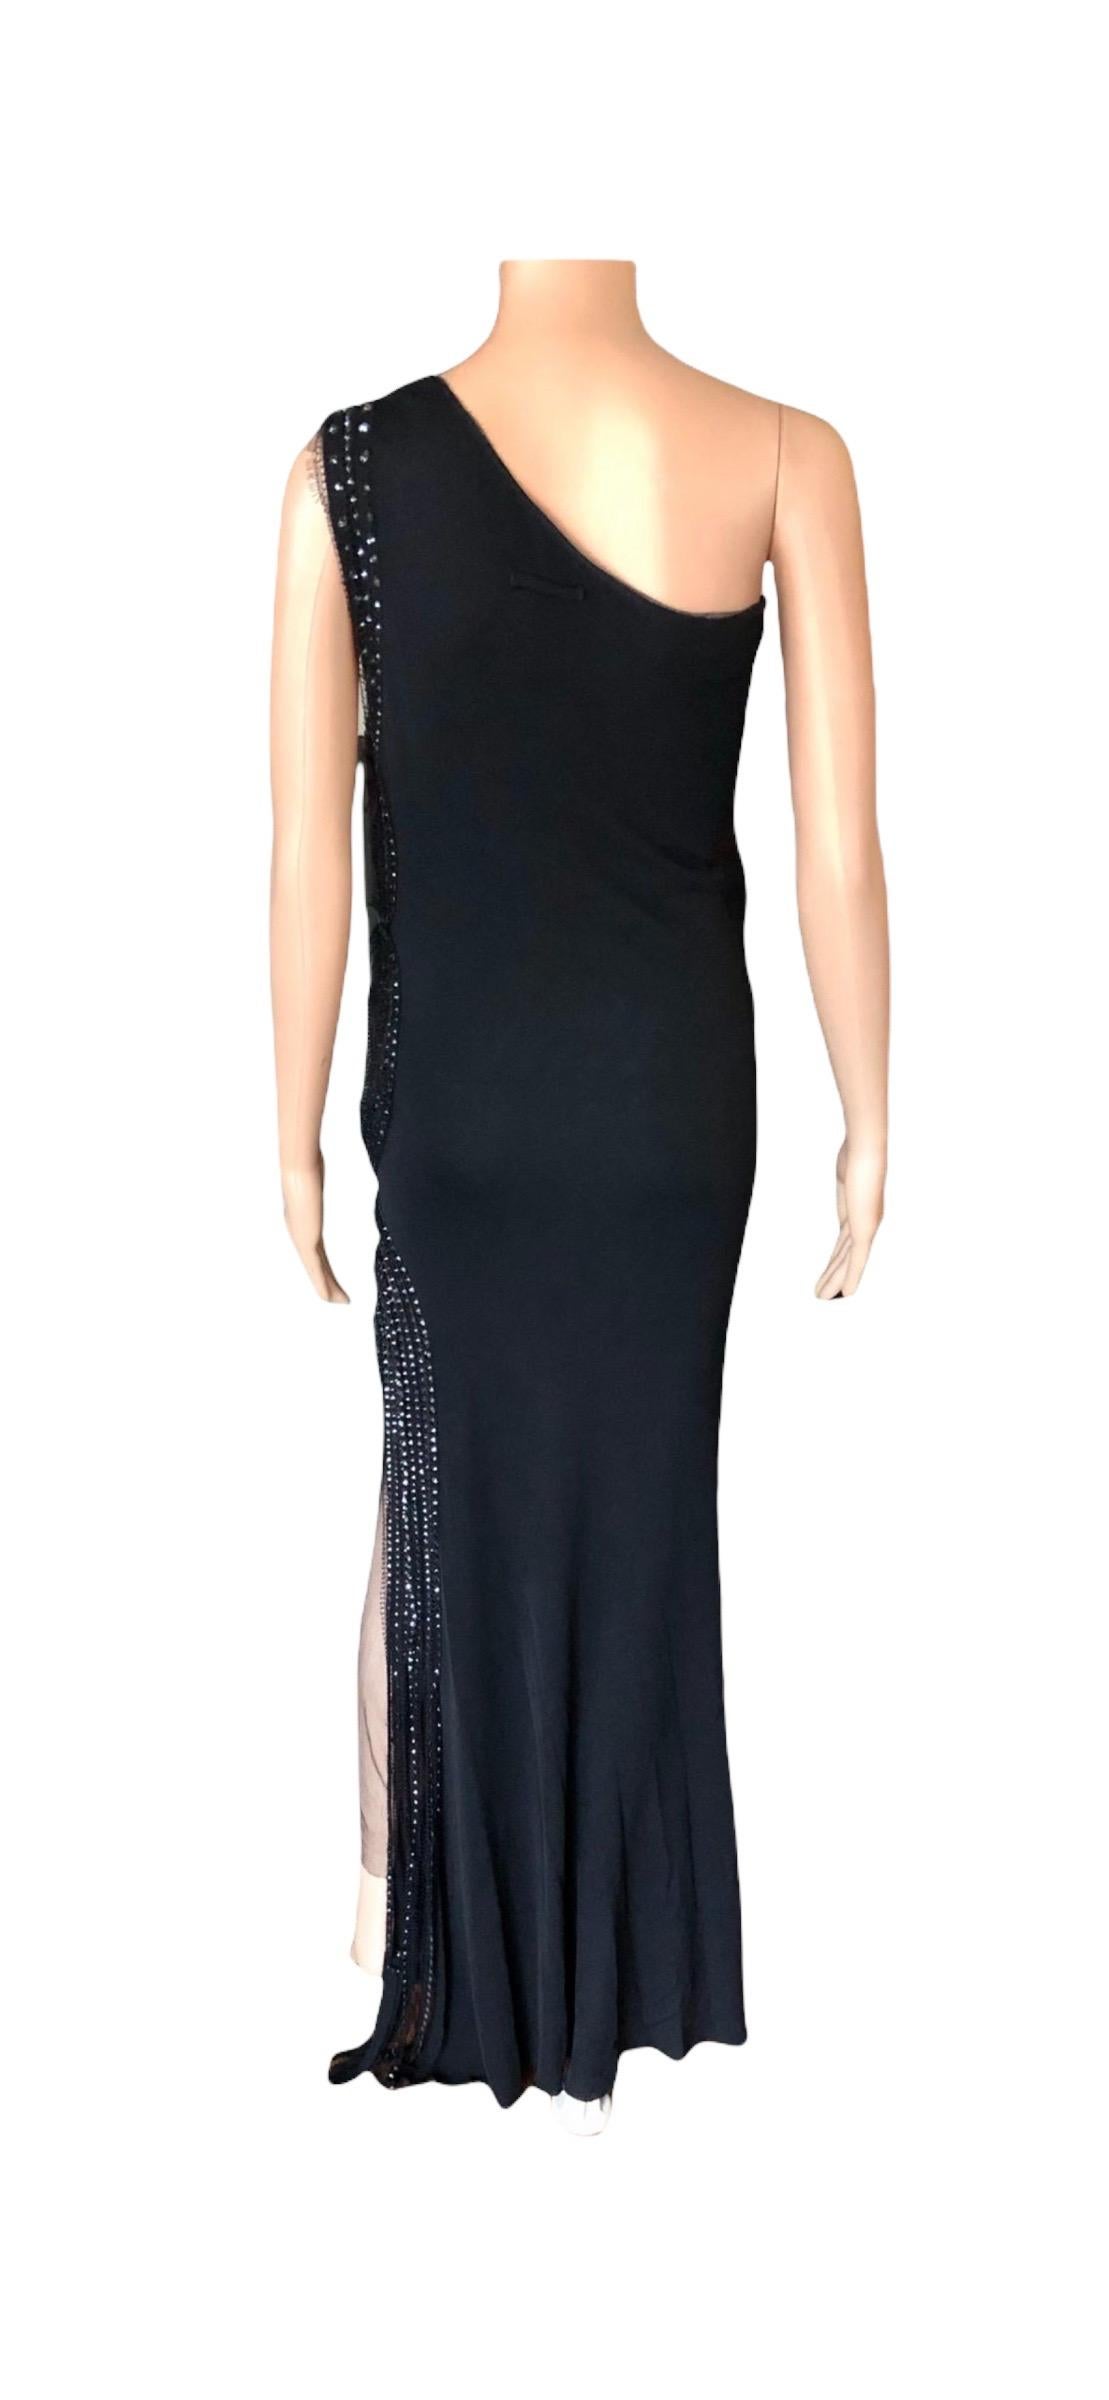 Jean Paul Gaultier Vintage Embellished One Shoulder Black Evening Dress Gown For Sale 6